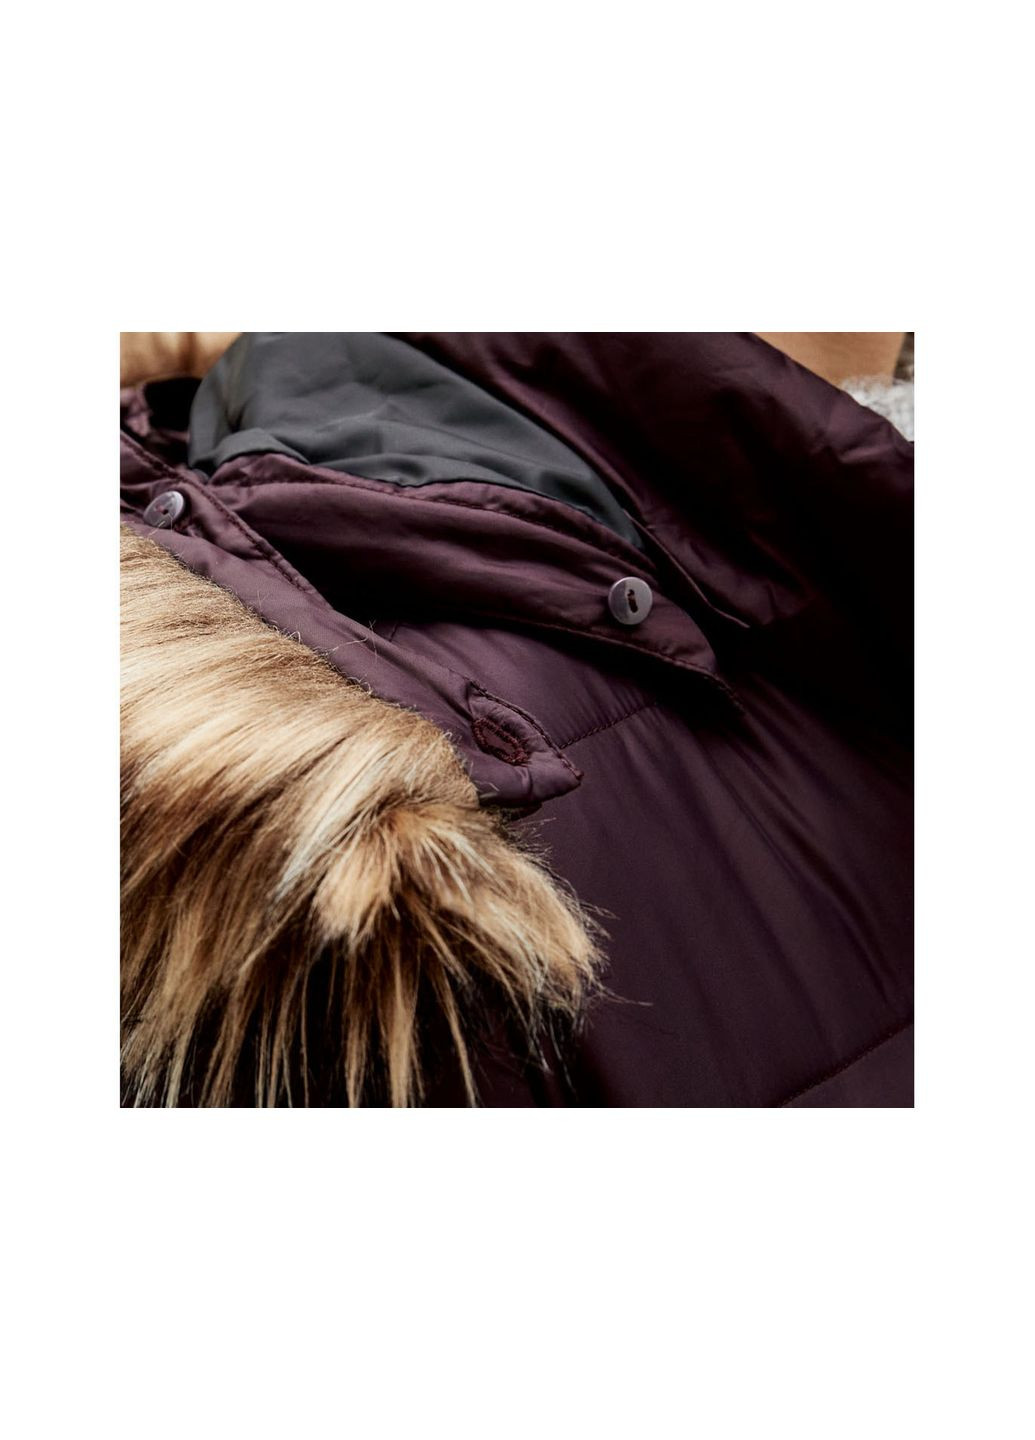 Фиолетовая демисезонная куртка демисезонная водоотталкивающая и ветрозащитная для женщины 362839 Esmara